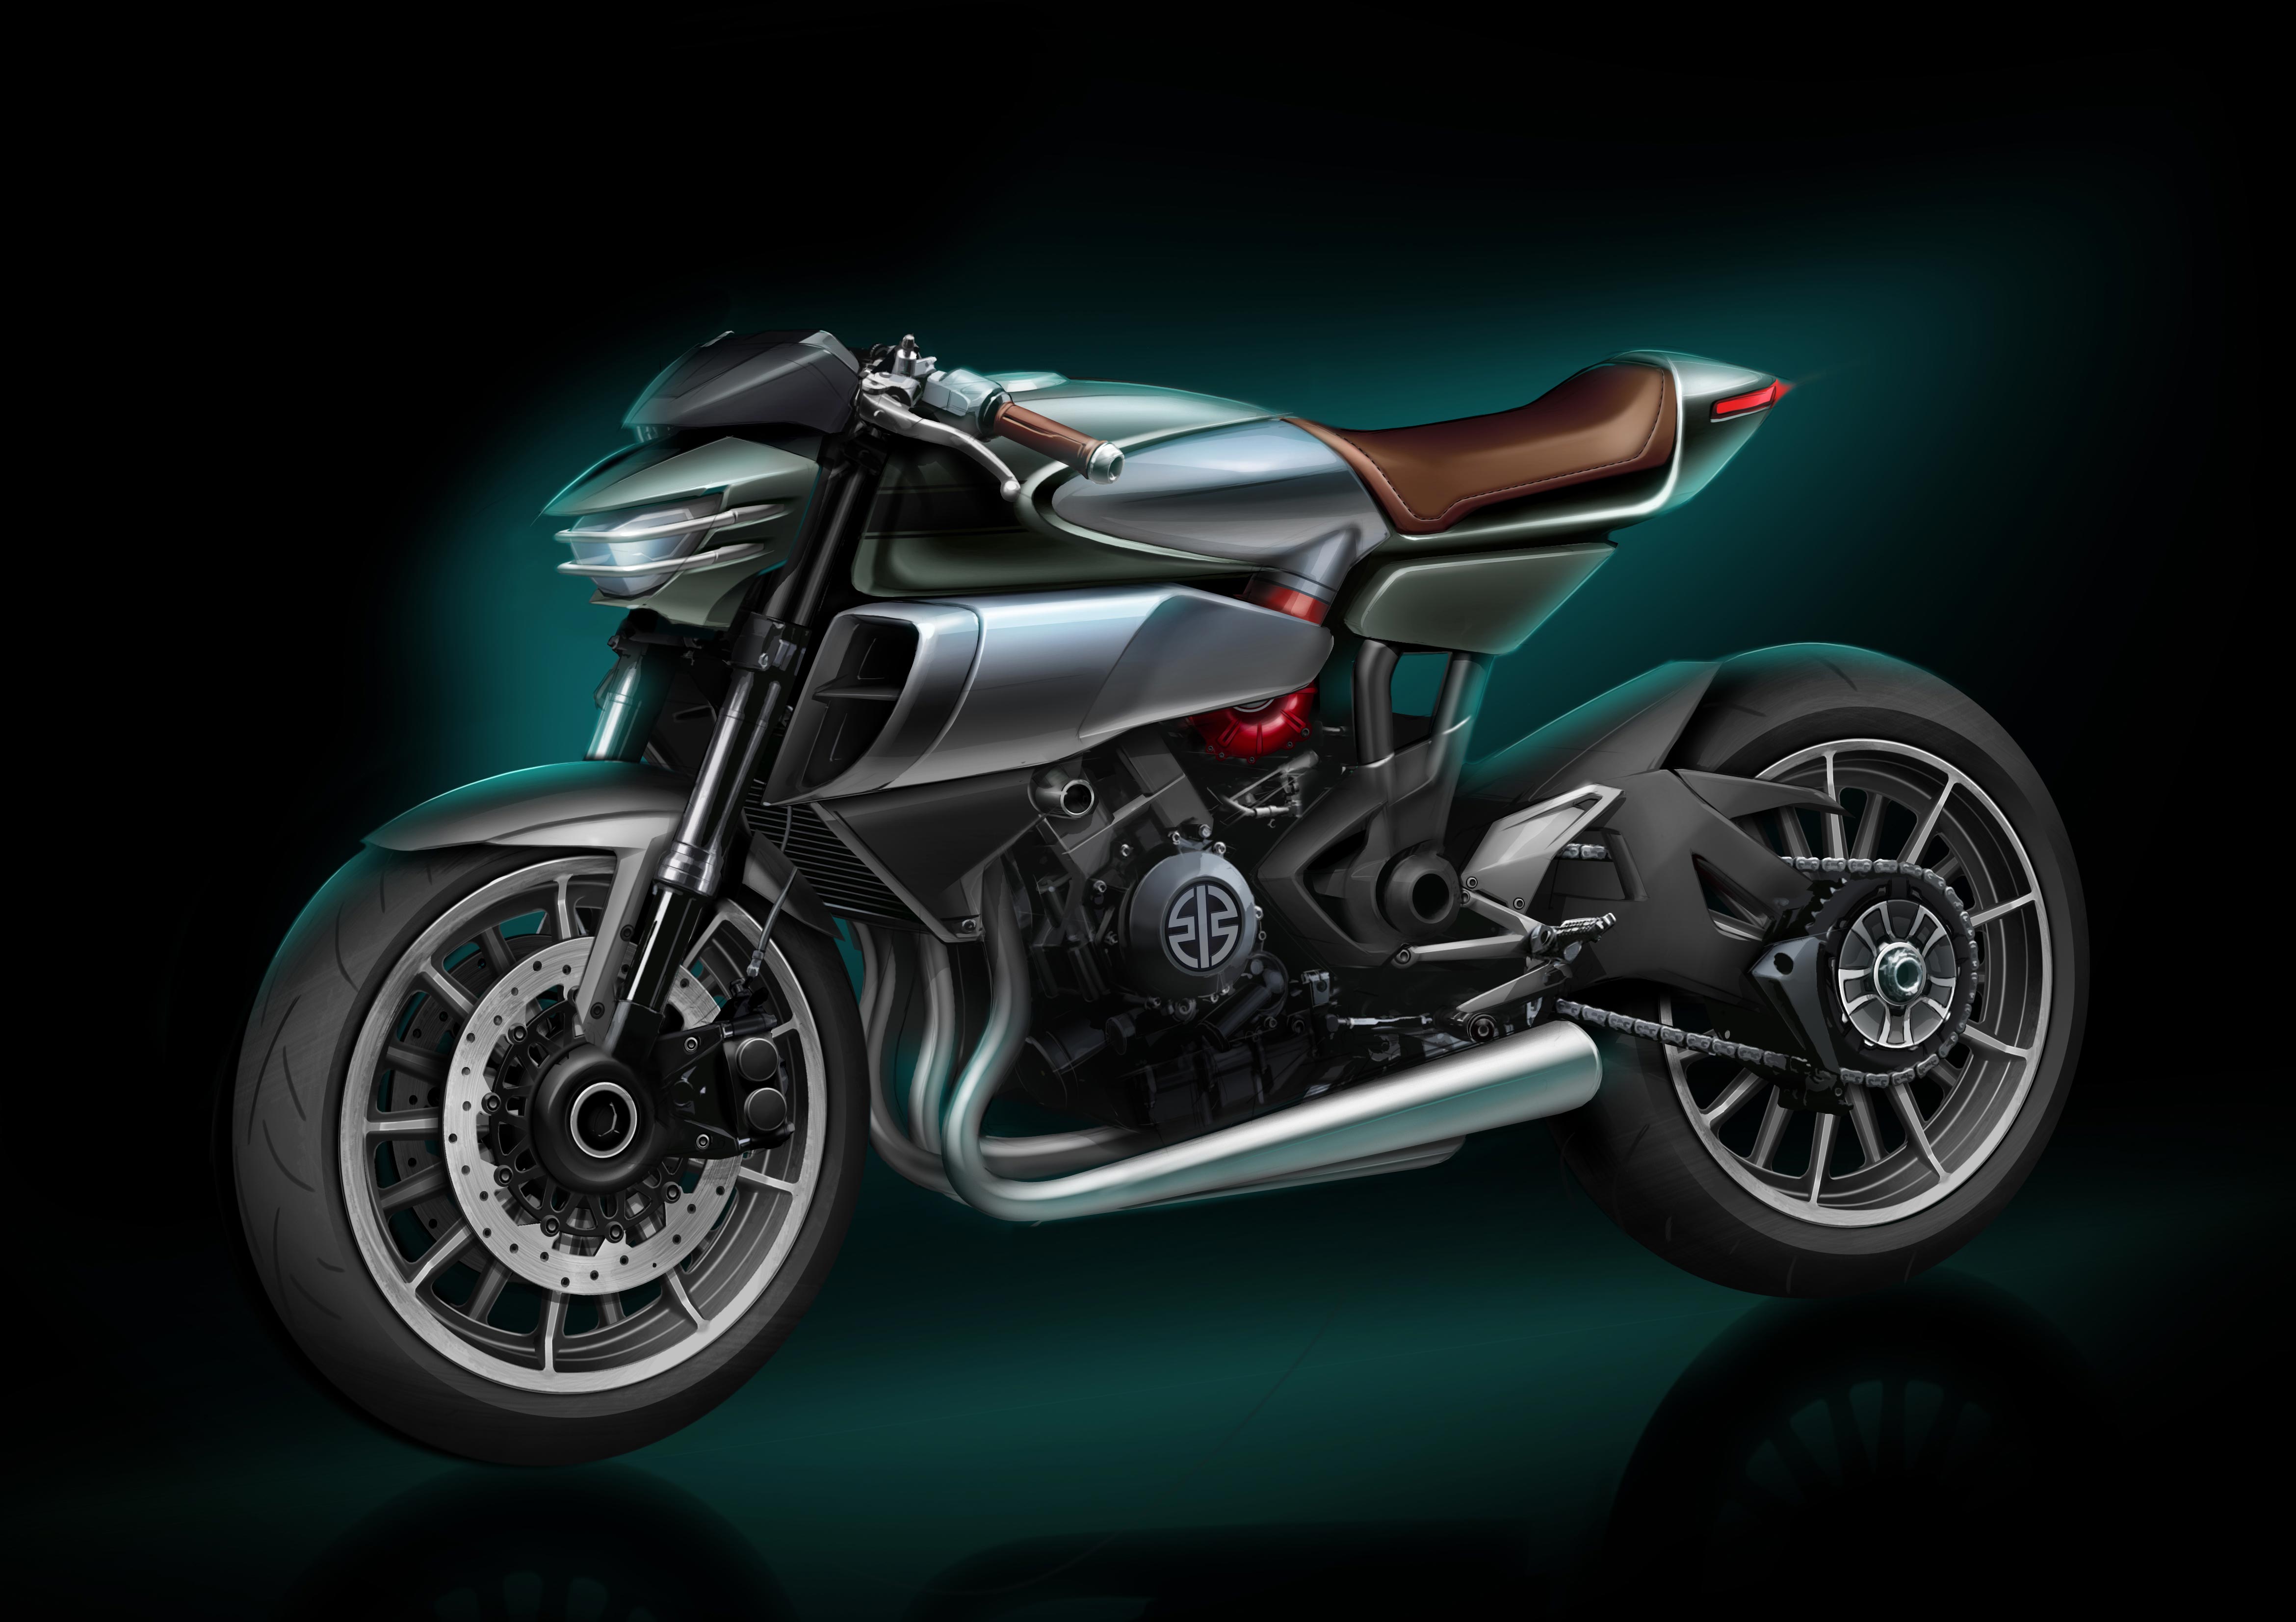 Kawasaki SC-02 “Soul Charger” Concept Debuts at EICMA